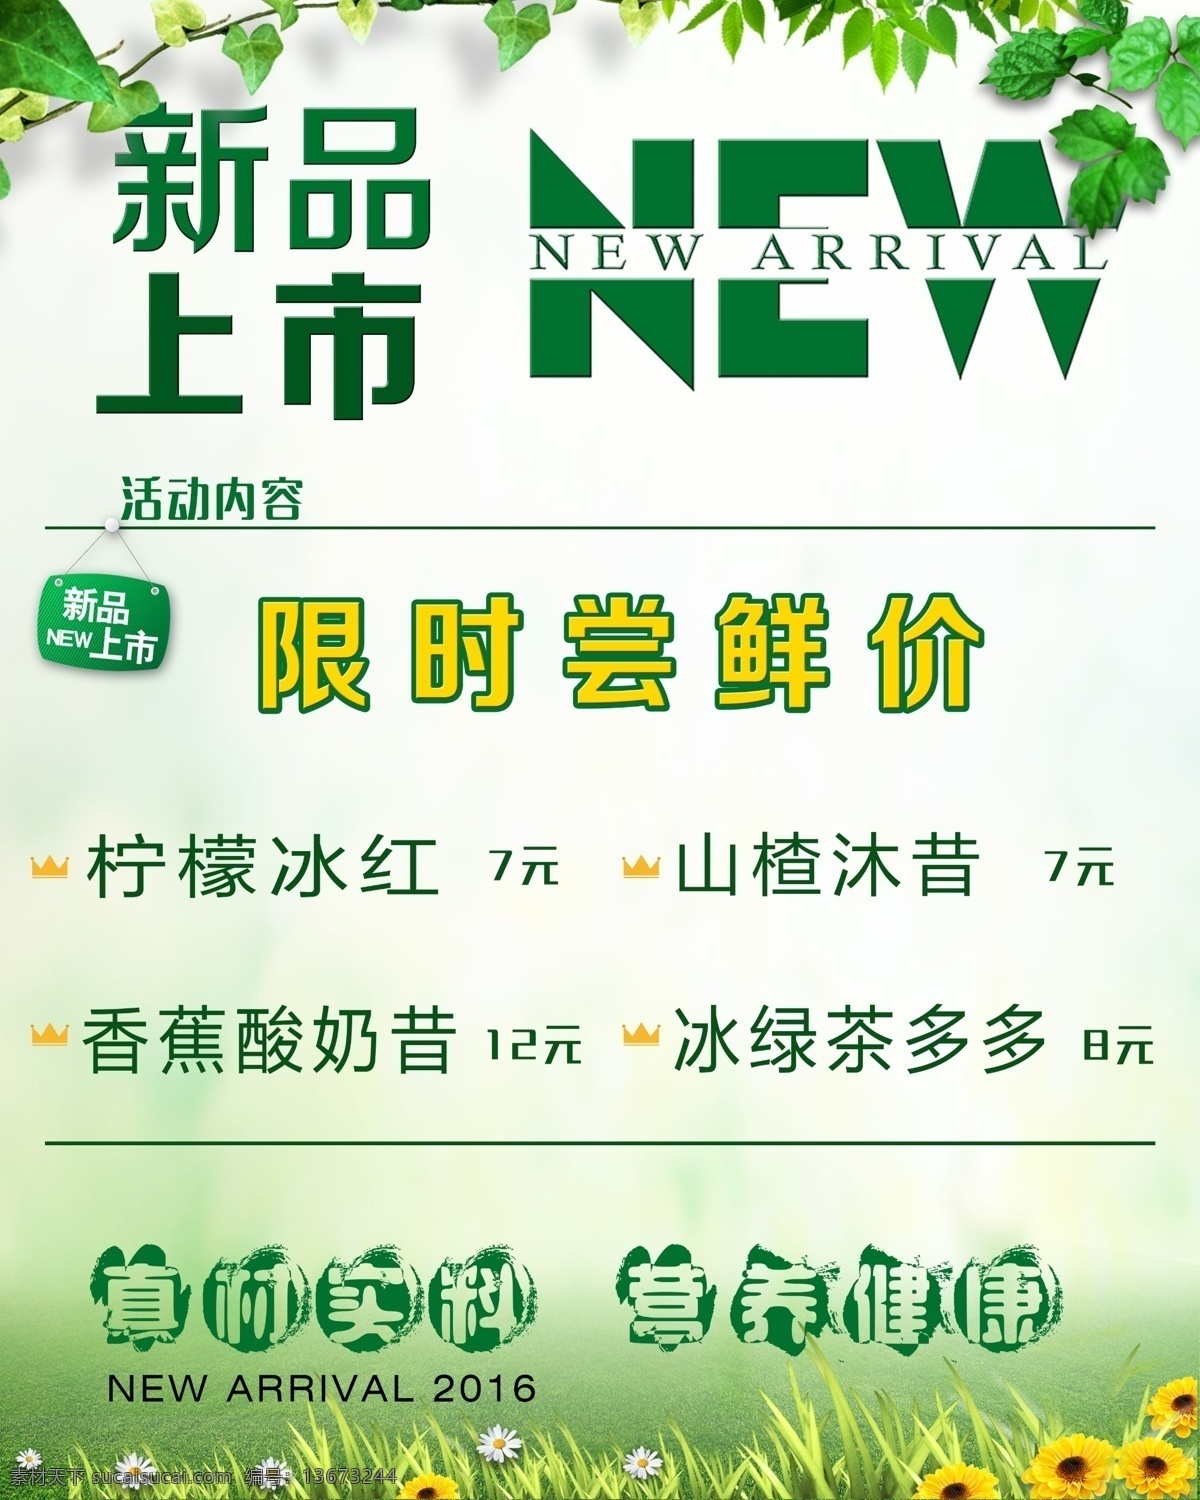 夏季 饮品 新 上市 海报 新品上市 绿色 清新风格 夏季饮品 限时尝鲜 活动海报 pdf 白色